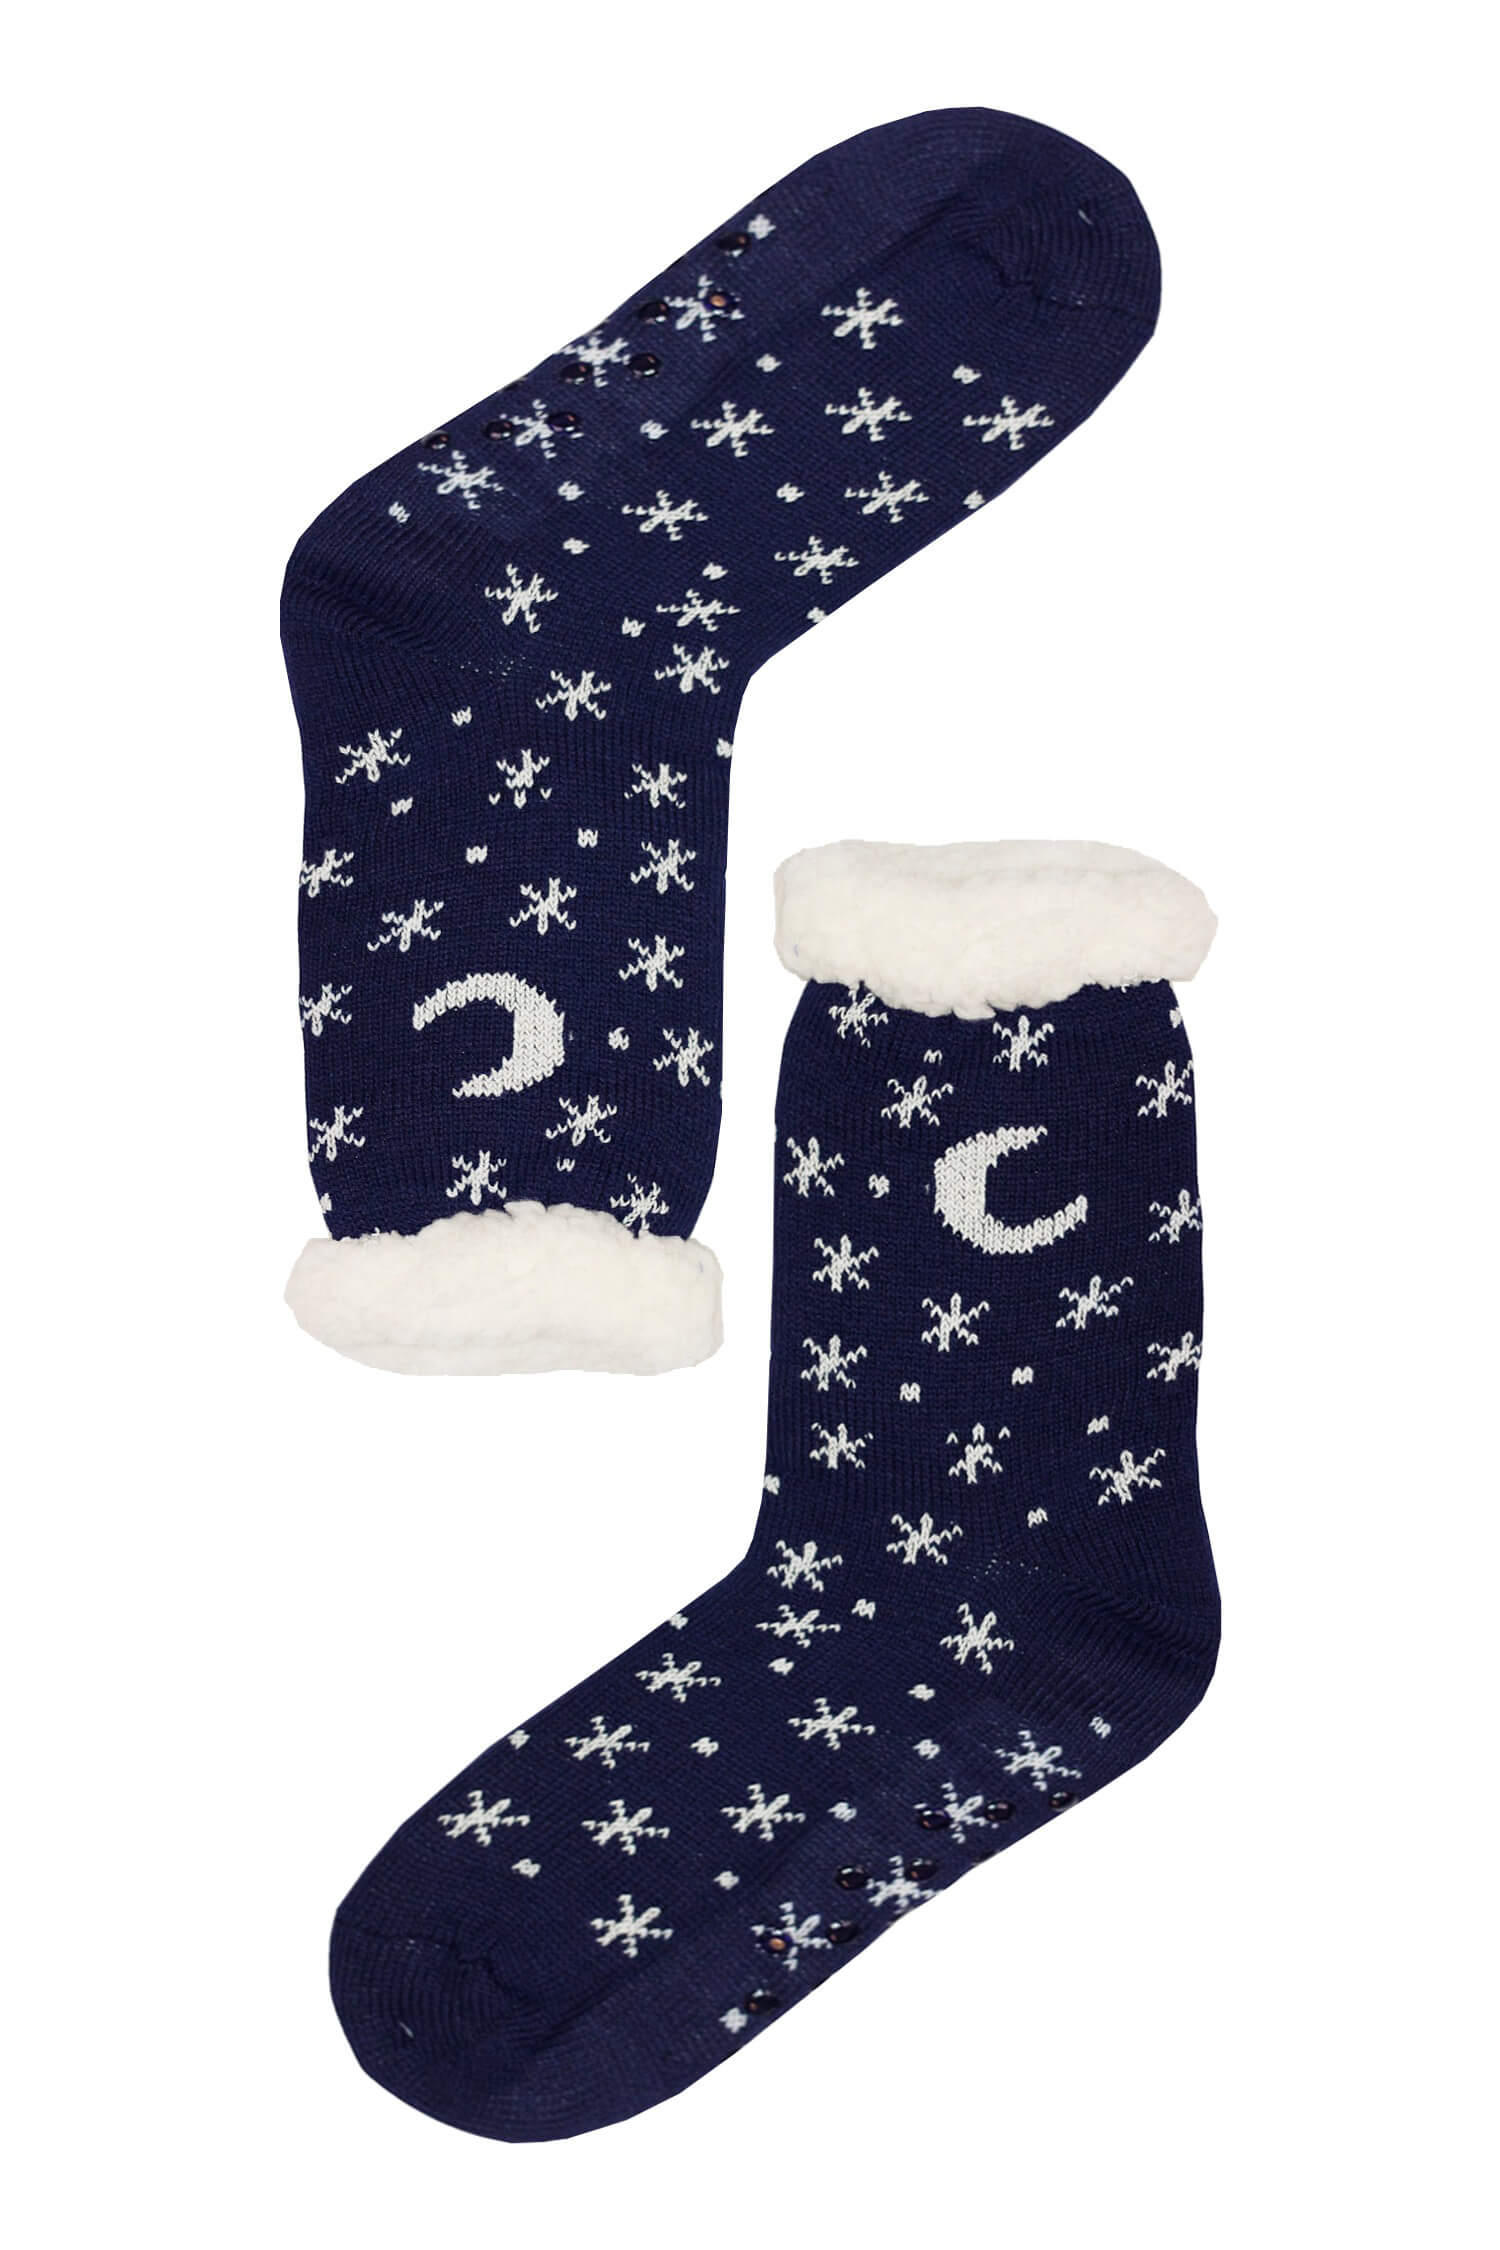 Mounty blue hřejivé ponožky beránek WW058 38-42 tmavě modrá